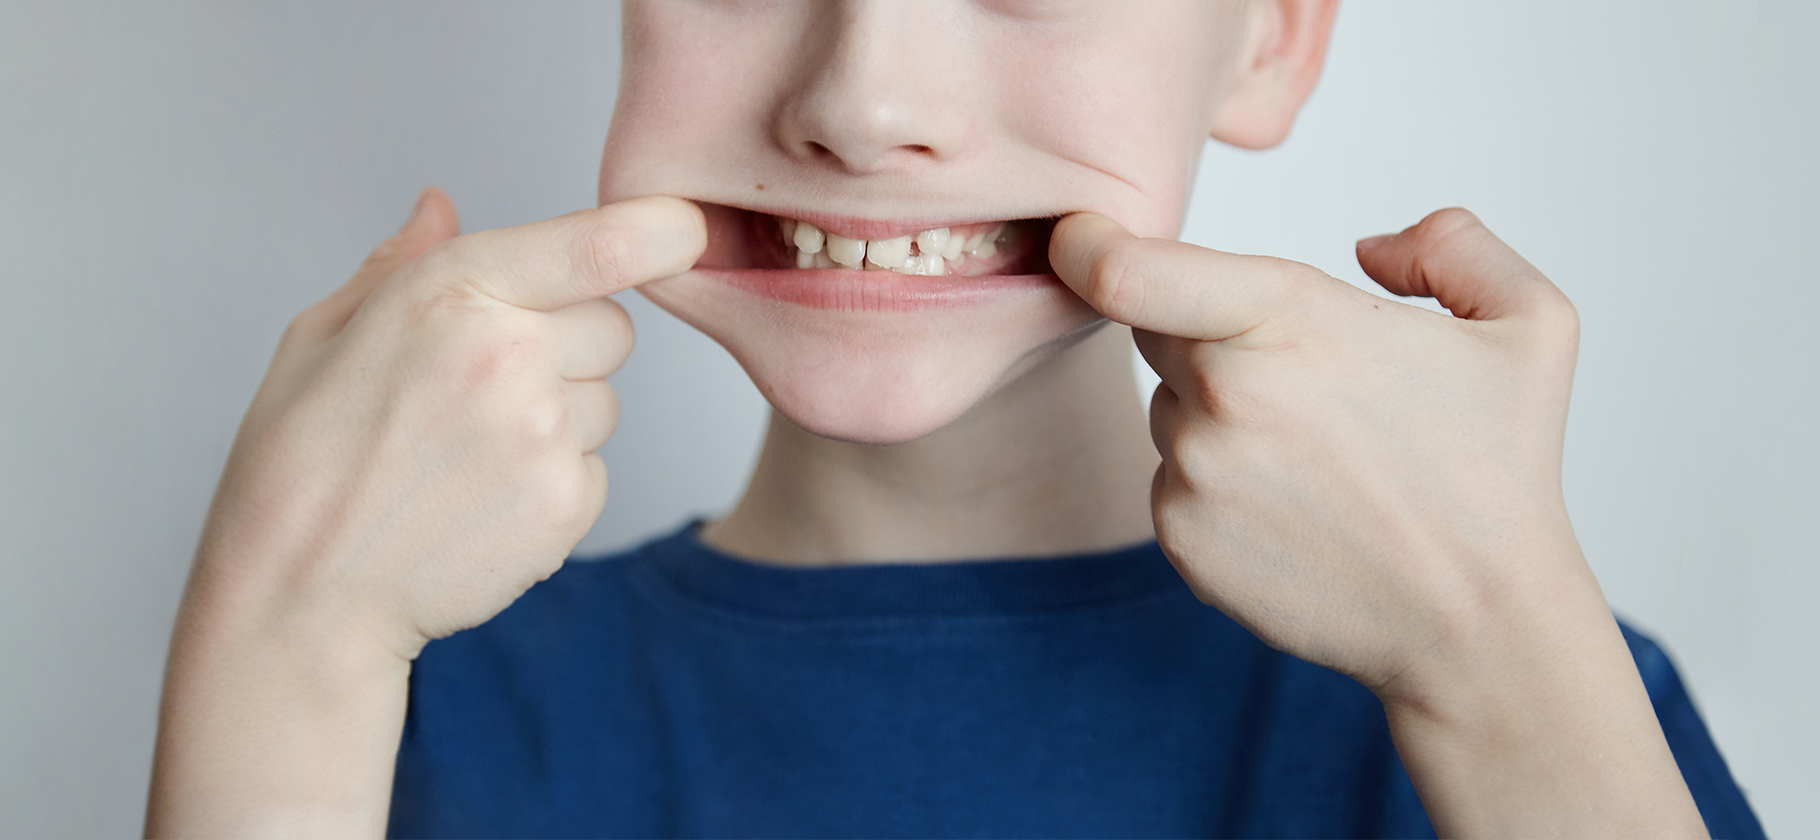 Что такое герметизация фиссур и как она защищает детские зубы от кариеса